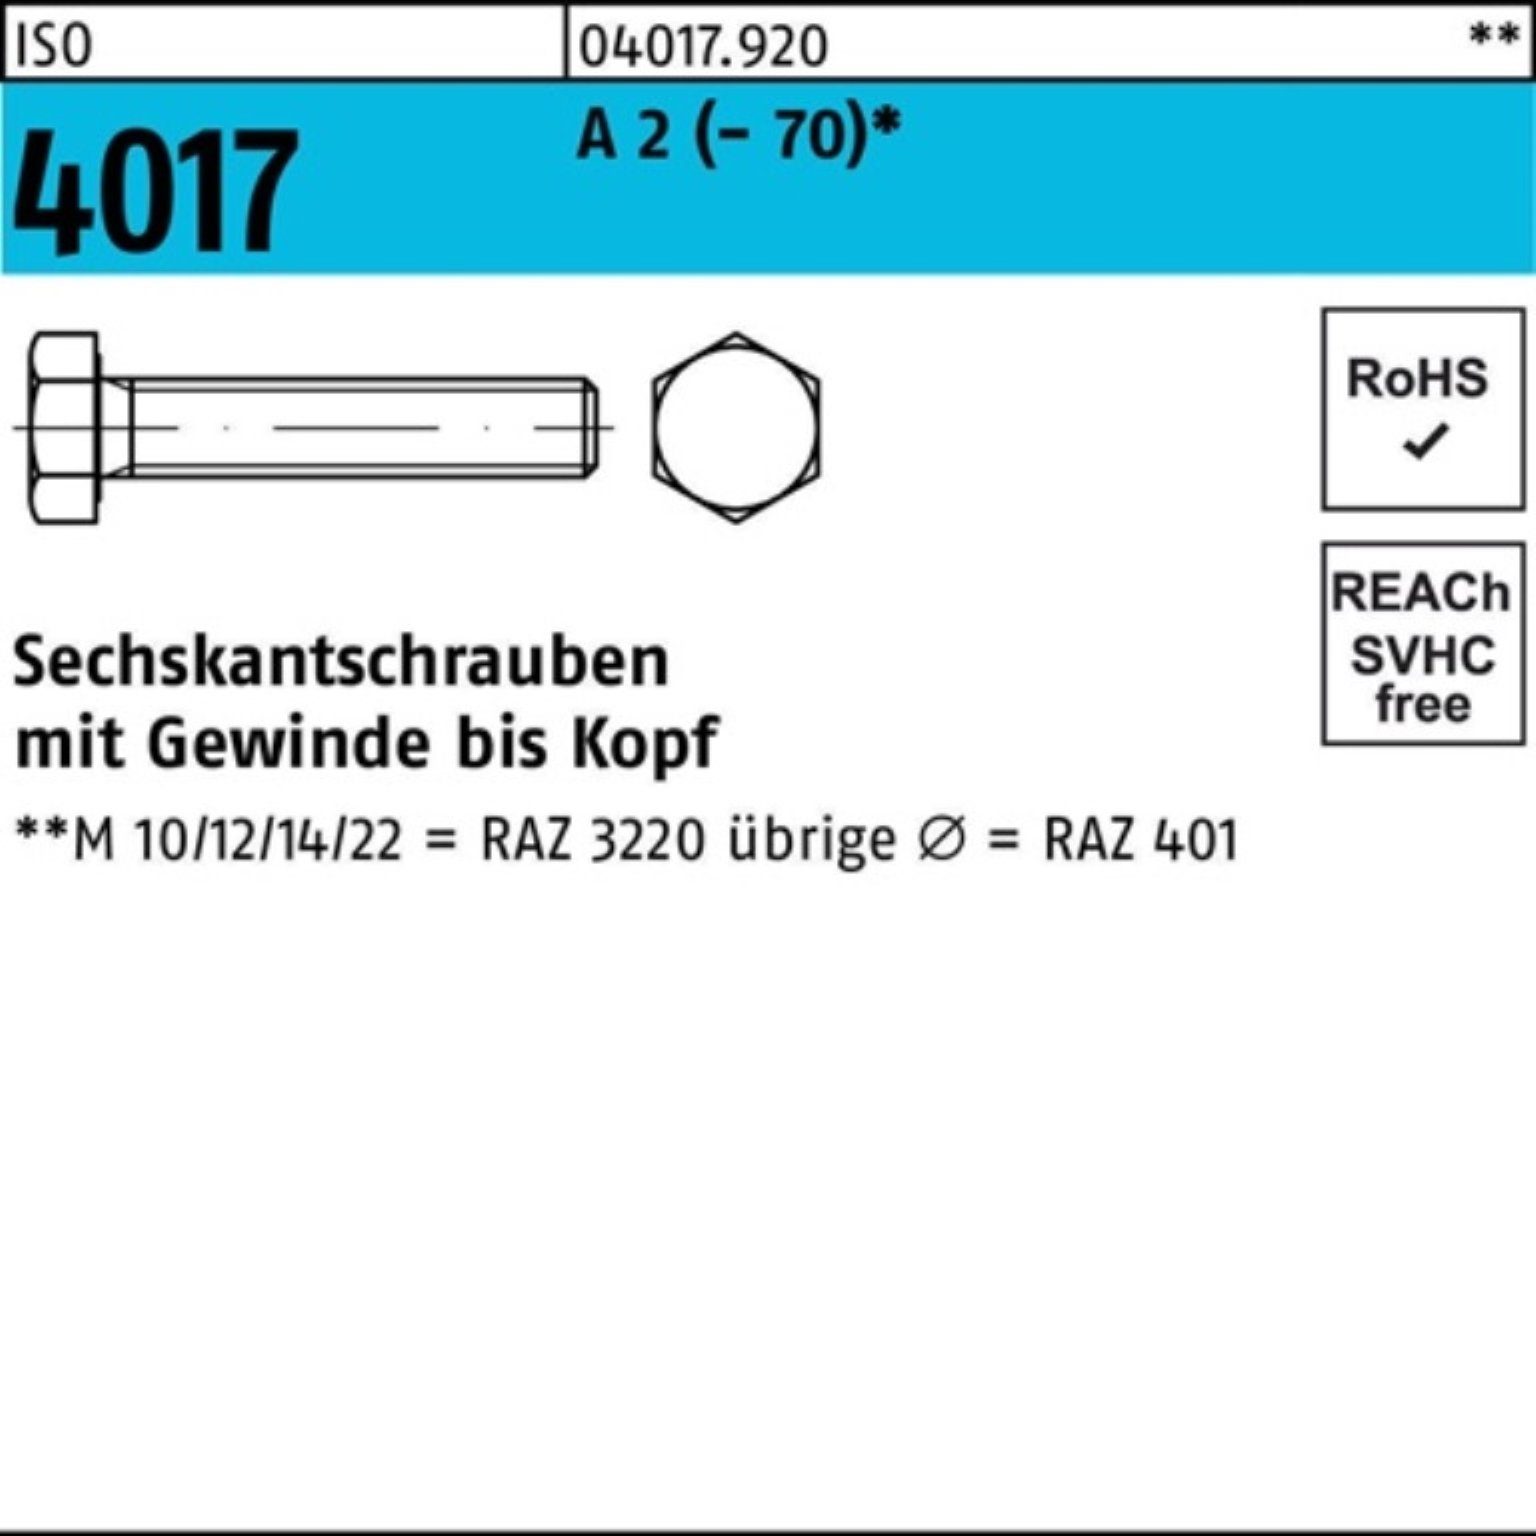 Bufab Sechskantschraube 100er Pack Sechskantschraube ISO 4017 VG M27x 130 A 2 (70) 1 Stück